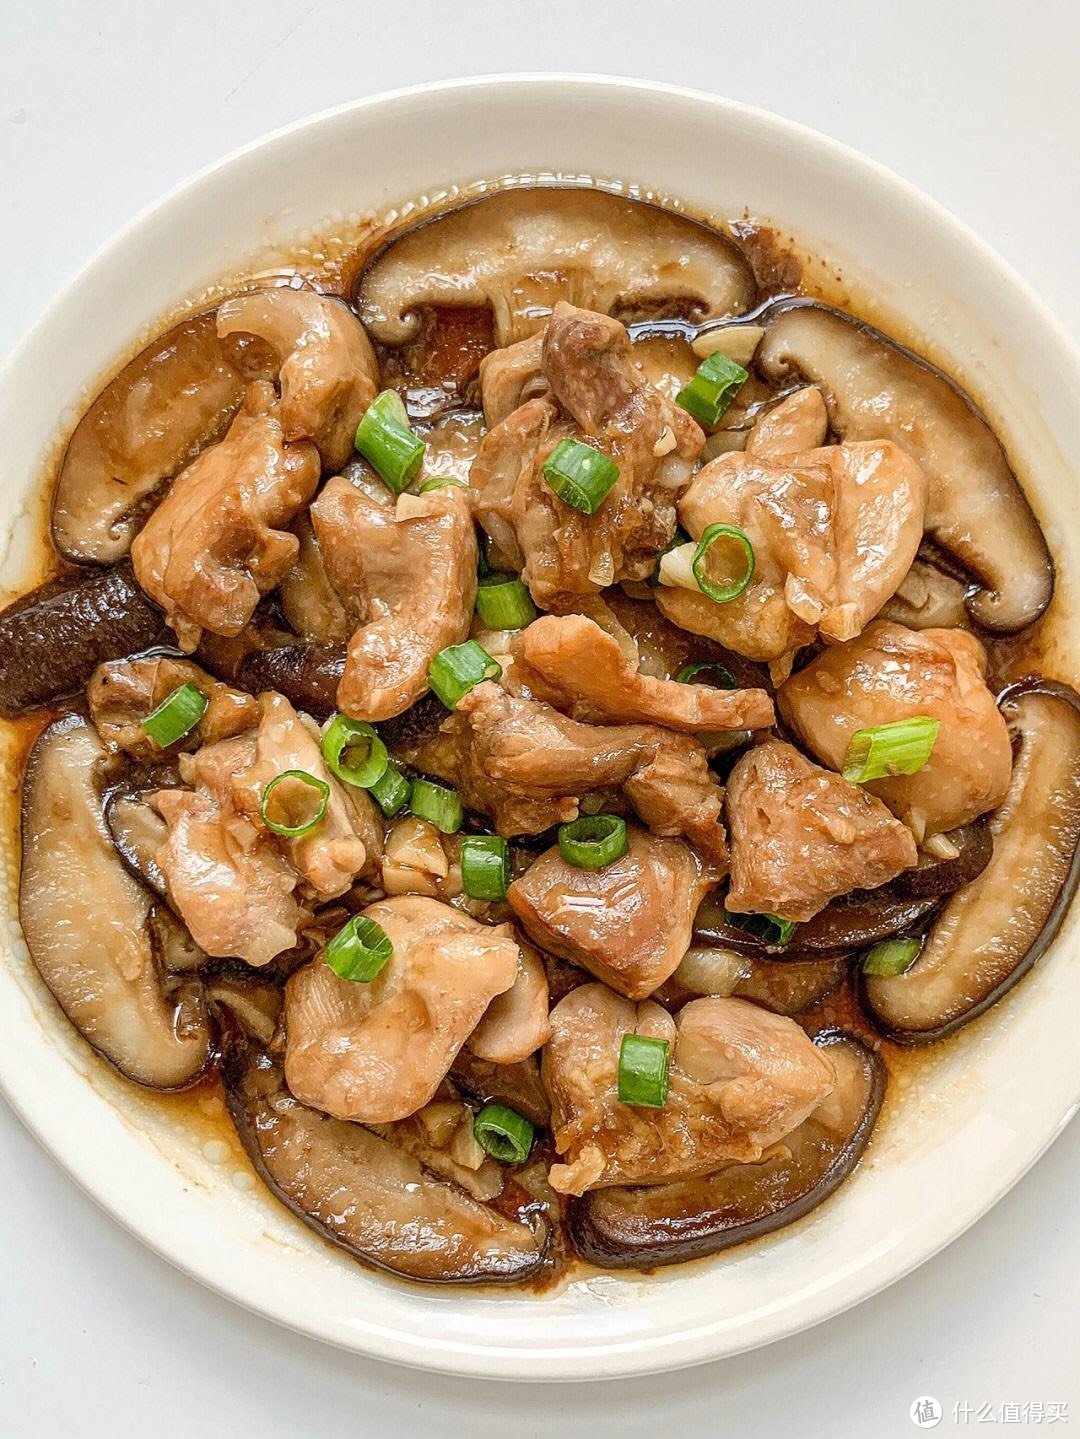 「香菇滑鸡」的美味秘诀，竟然是这道菜里最重要的调料！